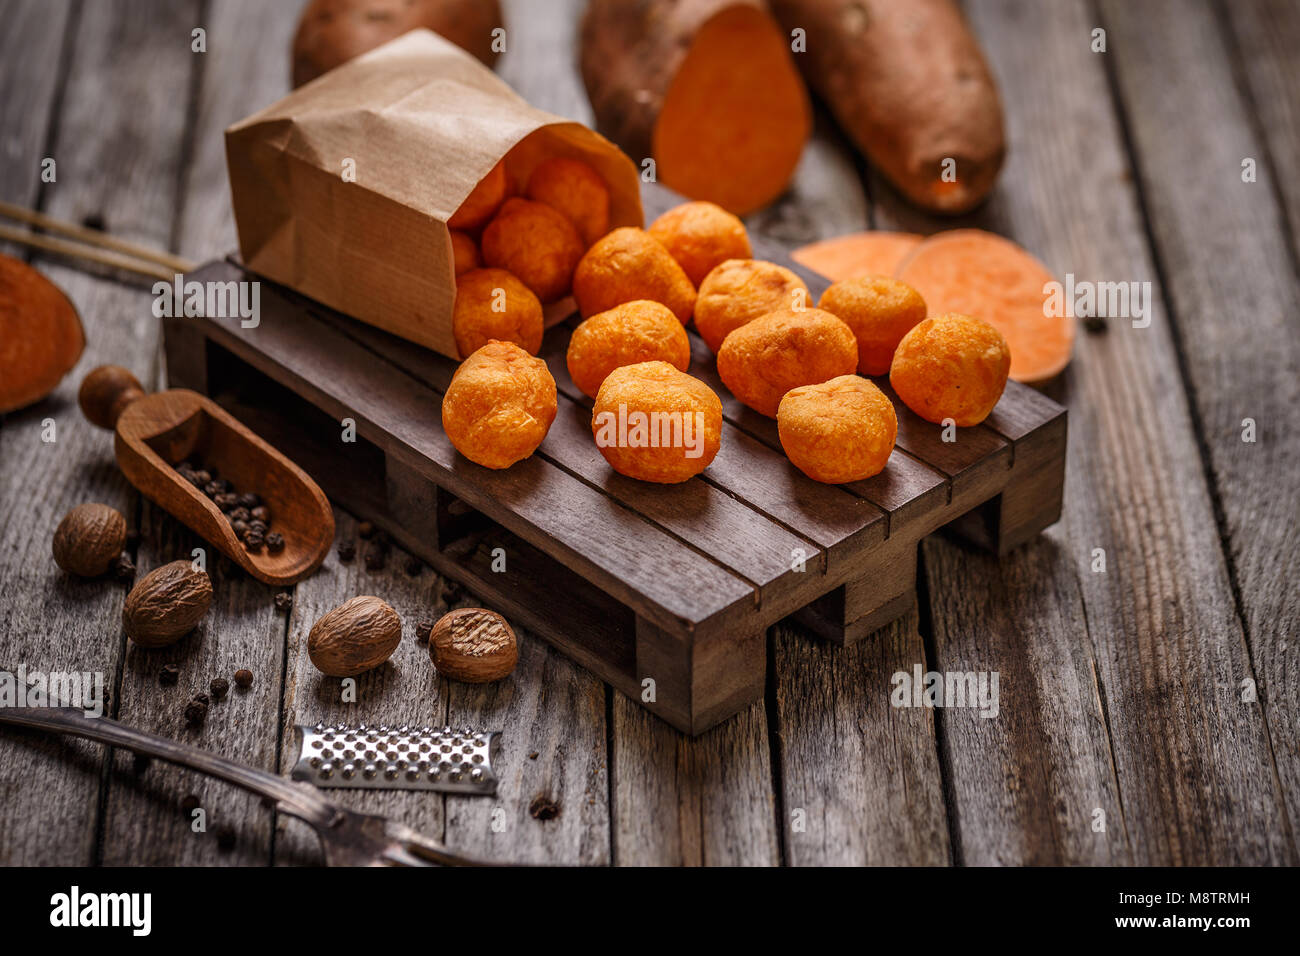 Thai fried sweet potato balls on wooden background Stock Photo